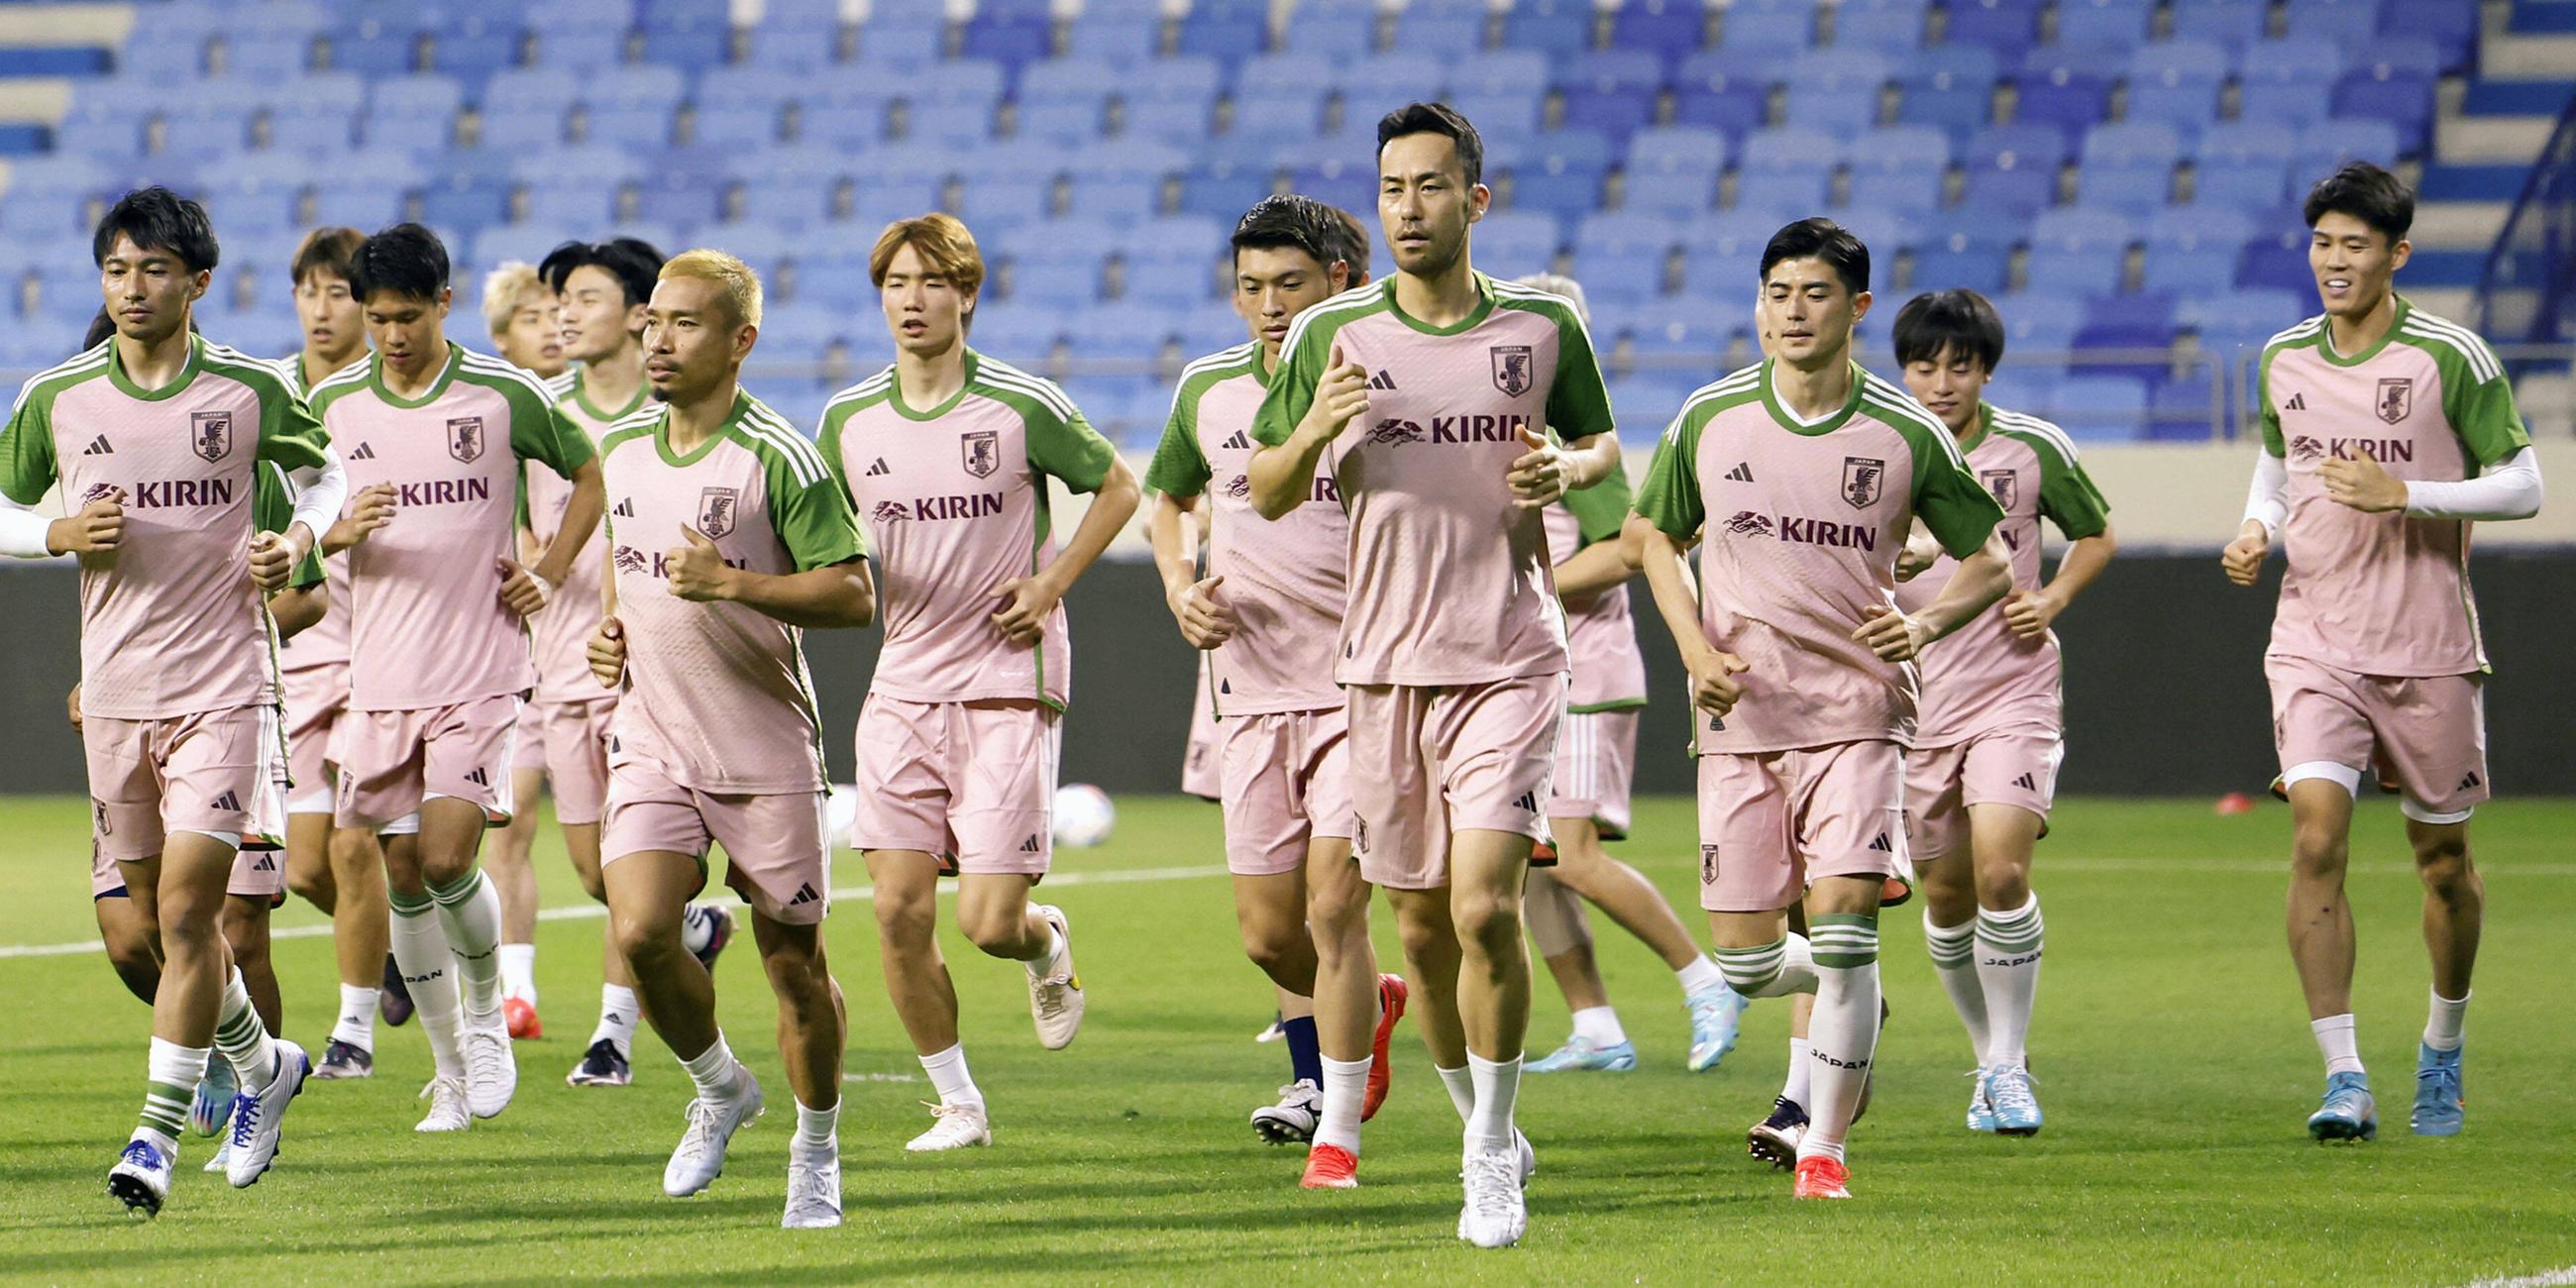 Die japanische Fußballnationalmannschaft Samurai Blue trainiert vor ihrem letzten WM-Auftaktspiel gegen Kanada am 16. 11. 2022 im Al Maktoum Stadium in Dubai